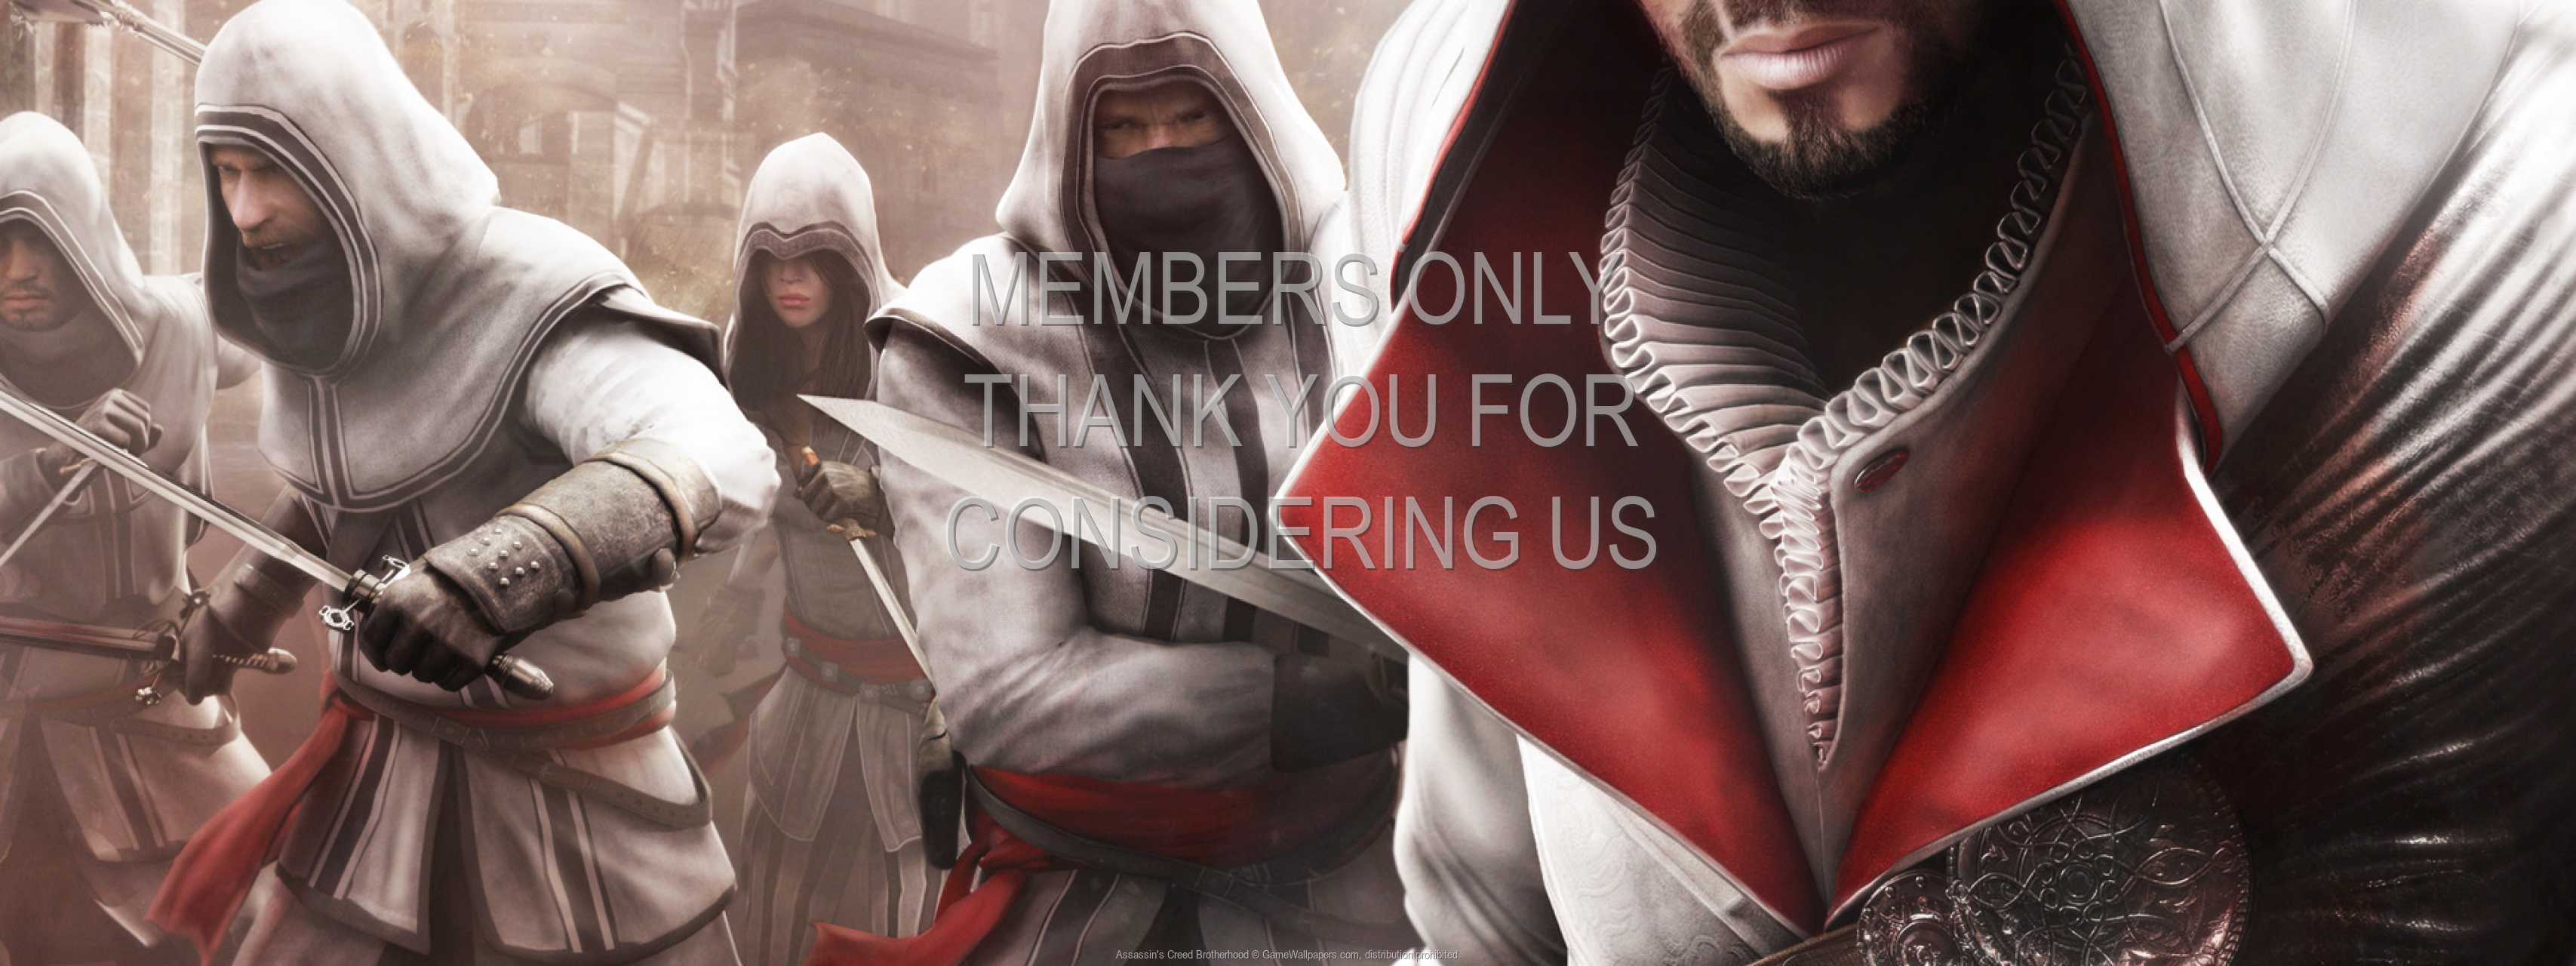 Assassin's Creed: Brotherhood 720p Horizontal Mobile fond d'cran 02